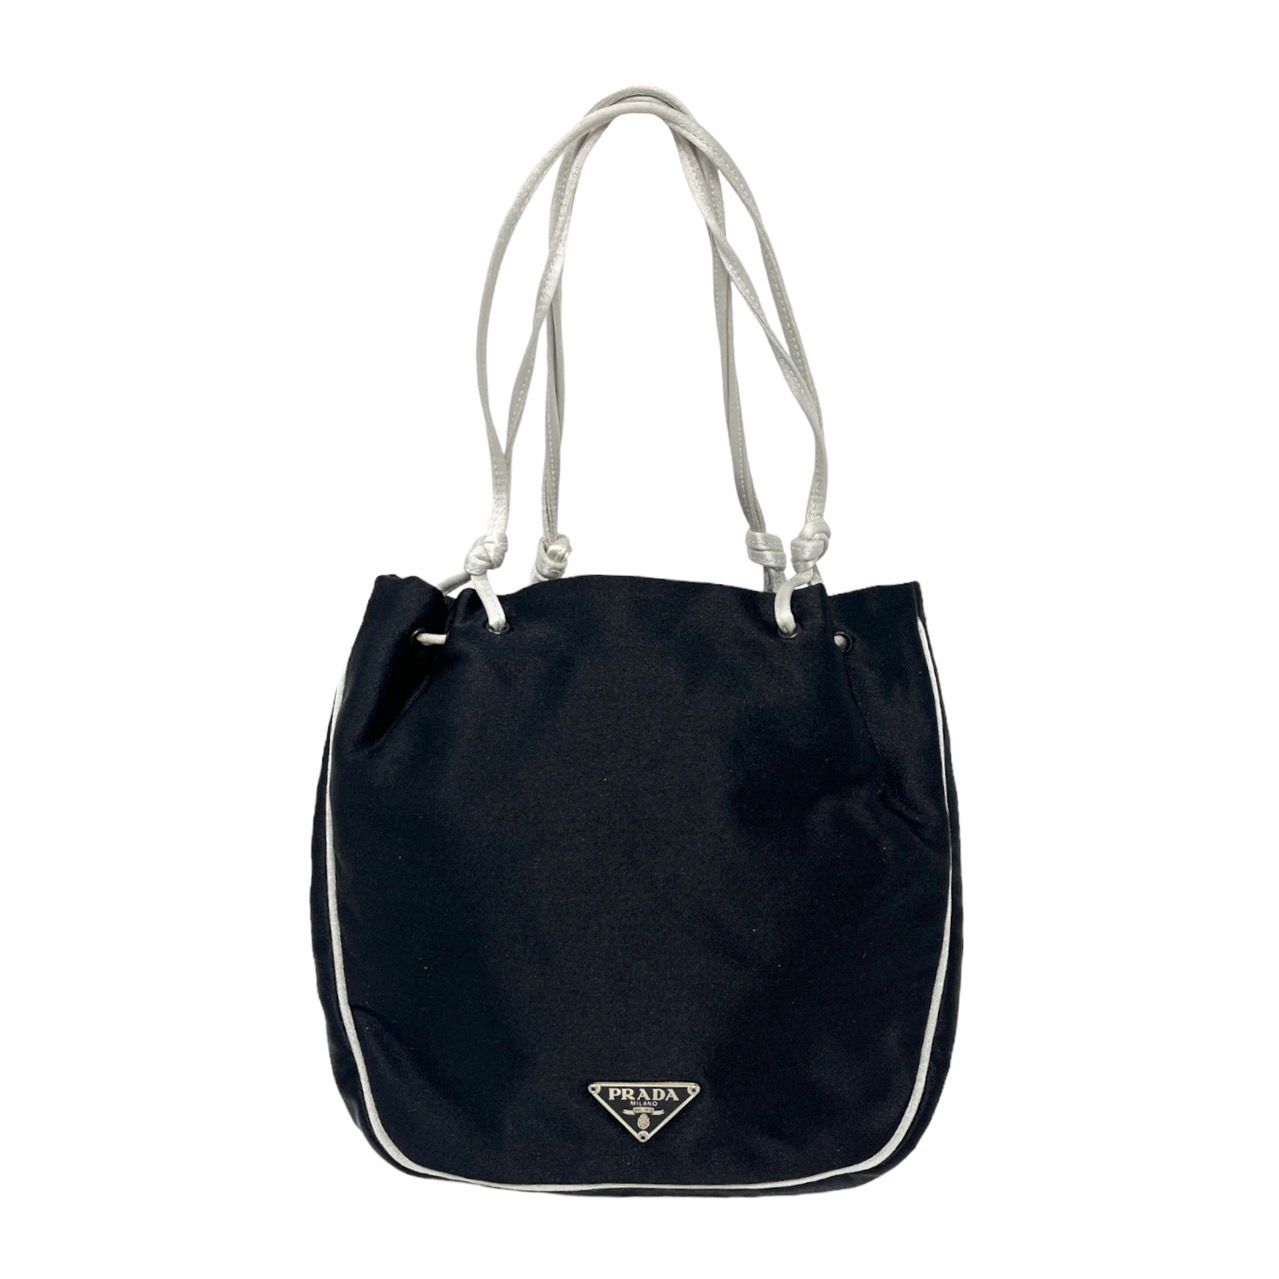 Prada Black Mini Satin Bag